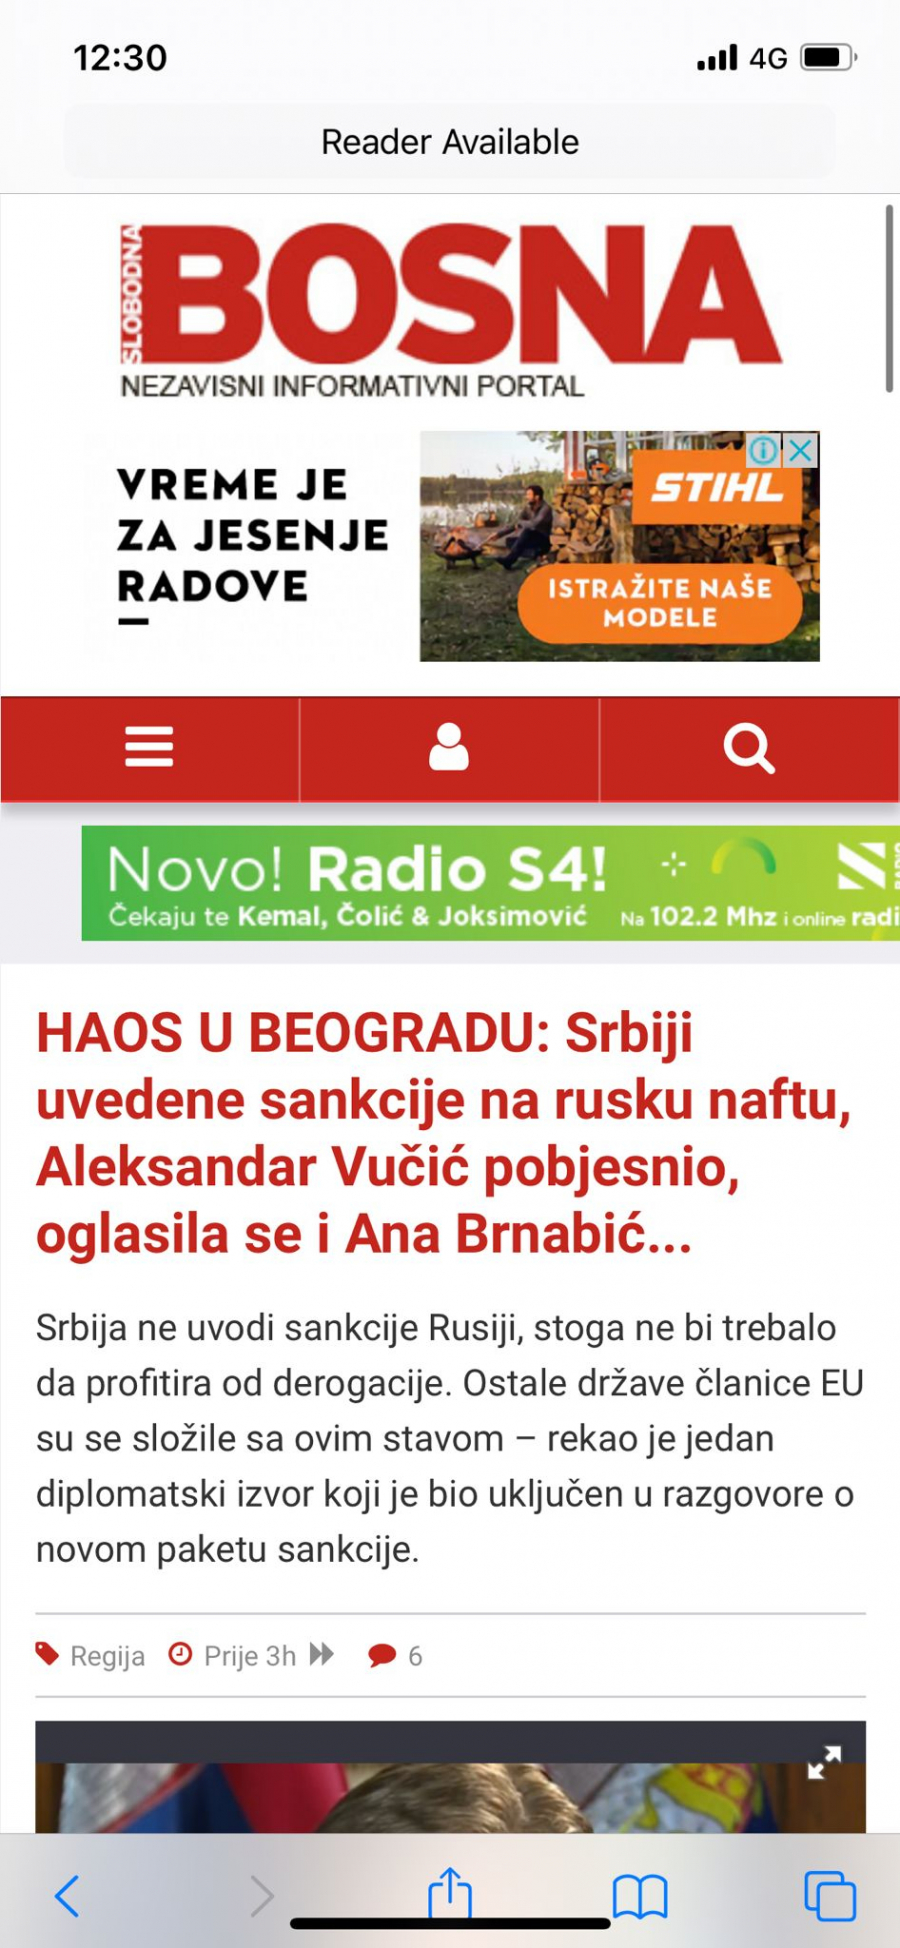 SRAMNE REAKCIJE! Bošnjački ekstremisti Slobodna Bosna raduju se sankcijama protiv Srbije